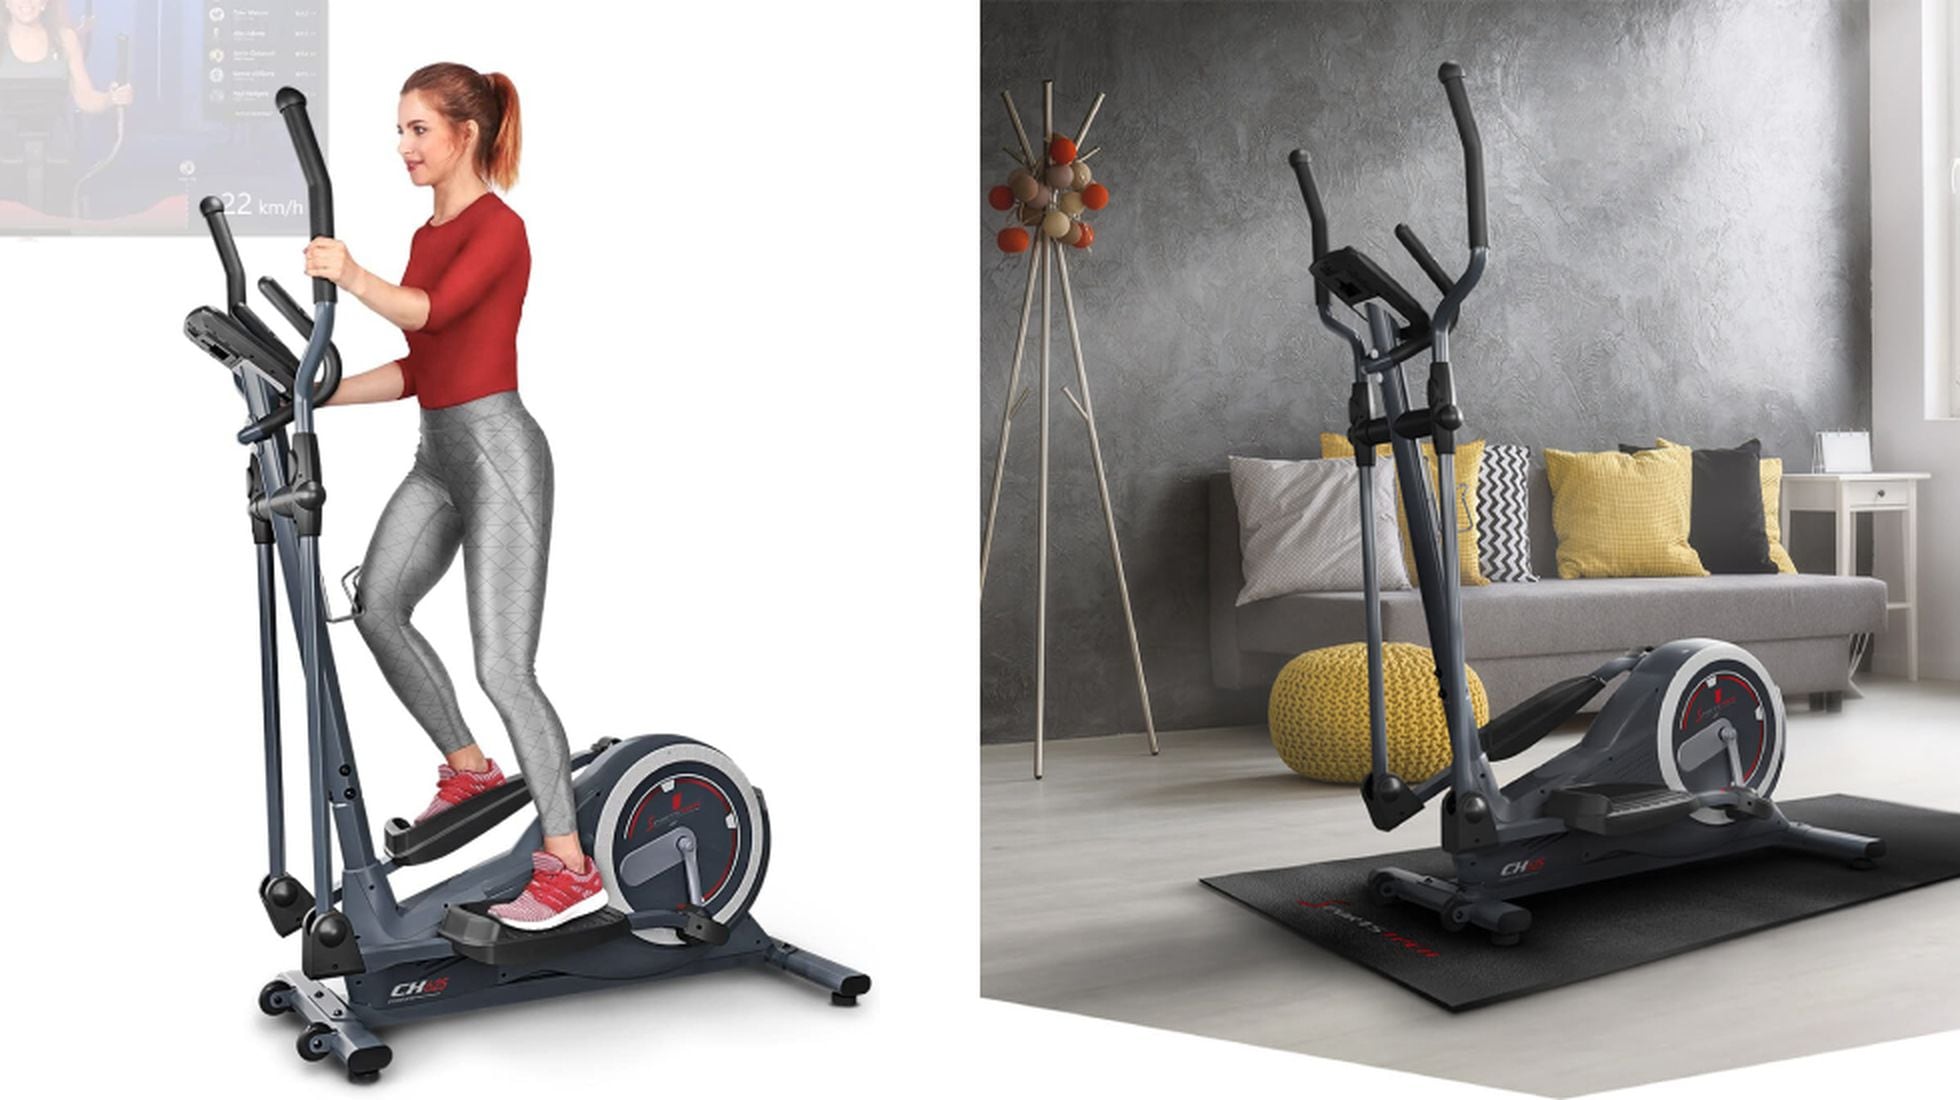 Sportech Fitness - Comprar Máquinas y Accesorios Fitness – Sportech fitness